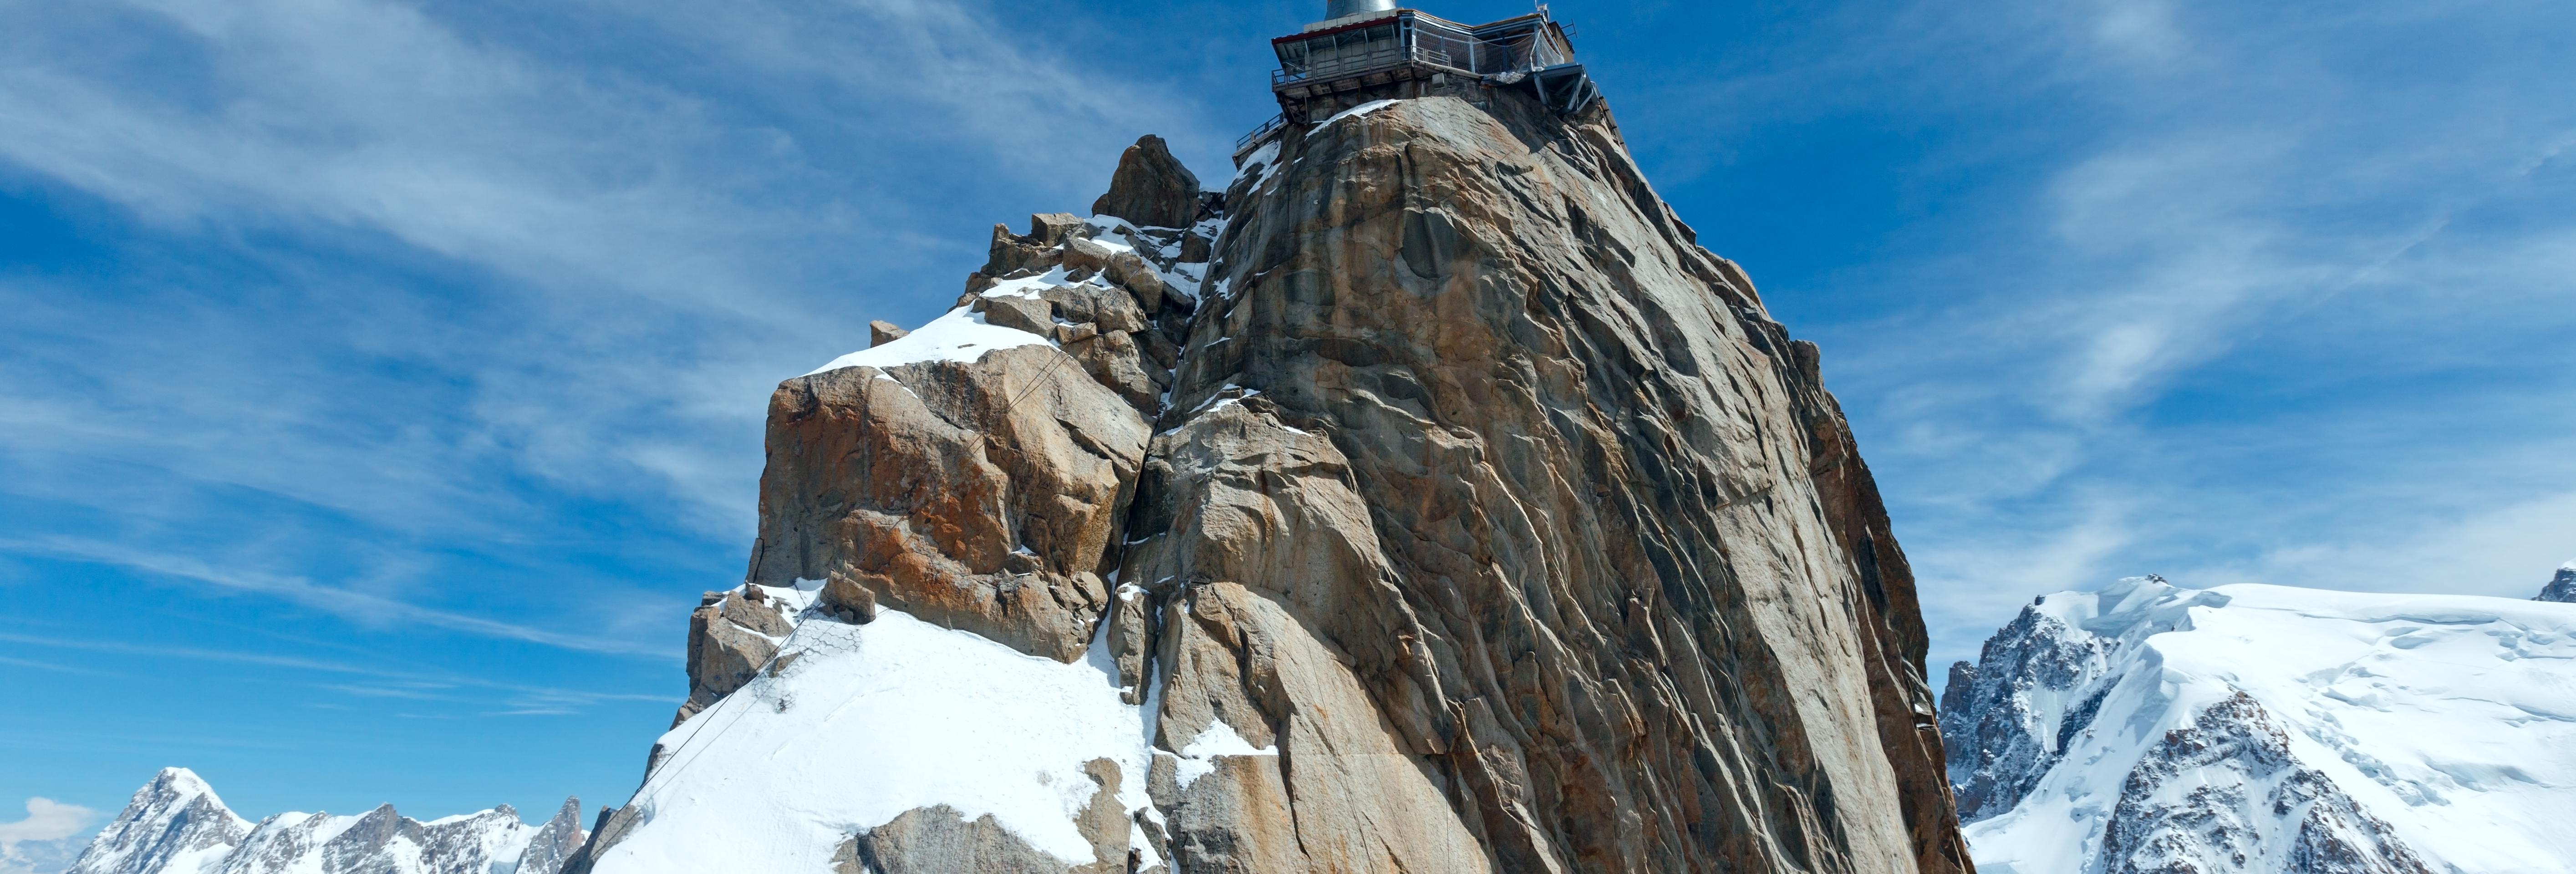 Demi journée de ski à Chamonix et billet pour l'Aiguille du Midi - aller-retour depuis Genève